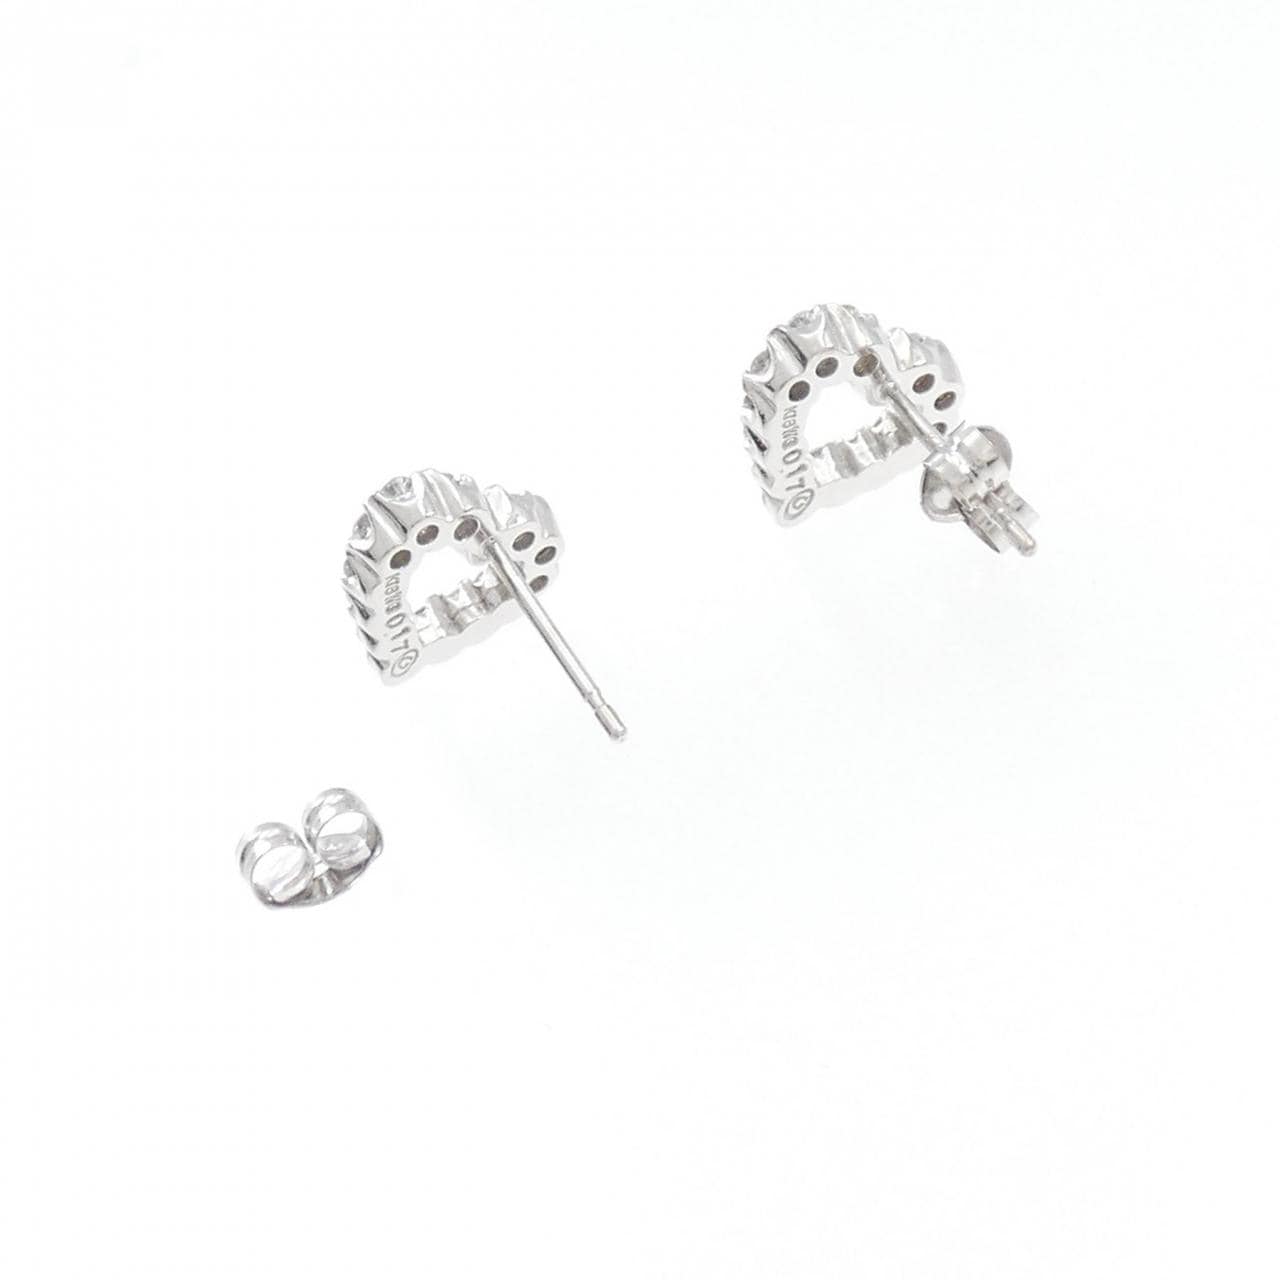 K18WG heart Diamond earrings 0.34CT